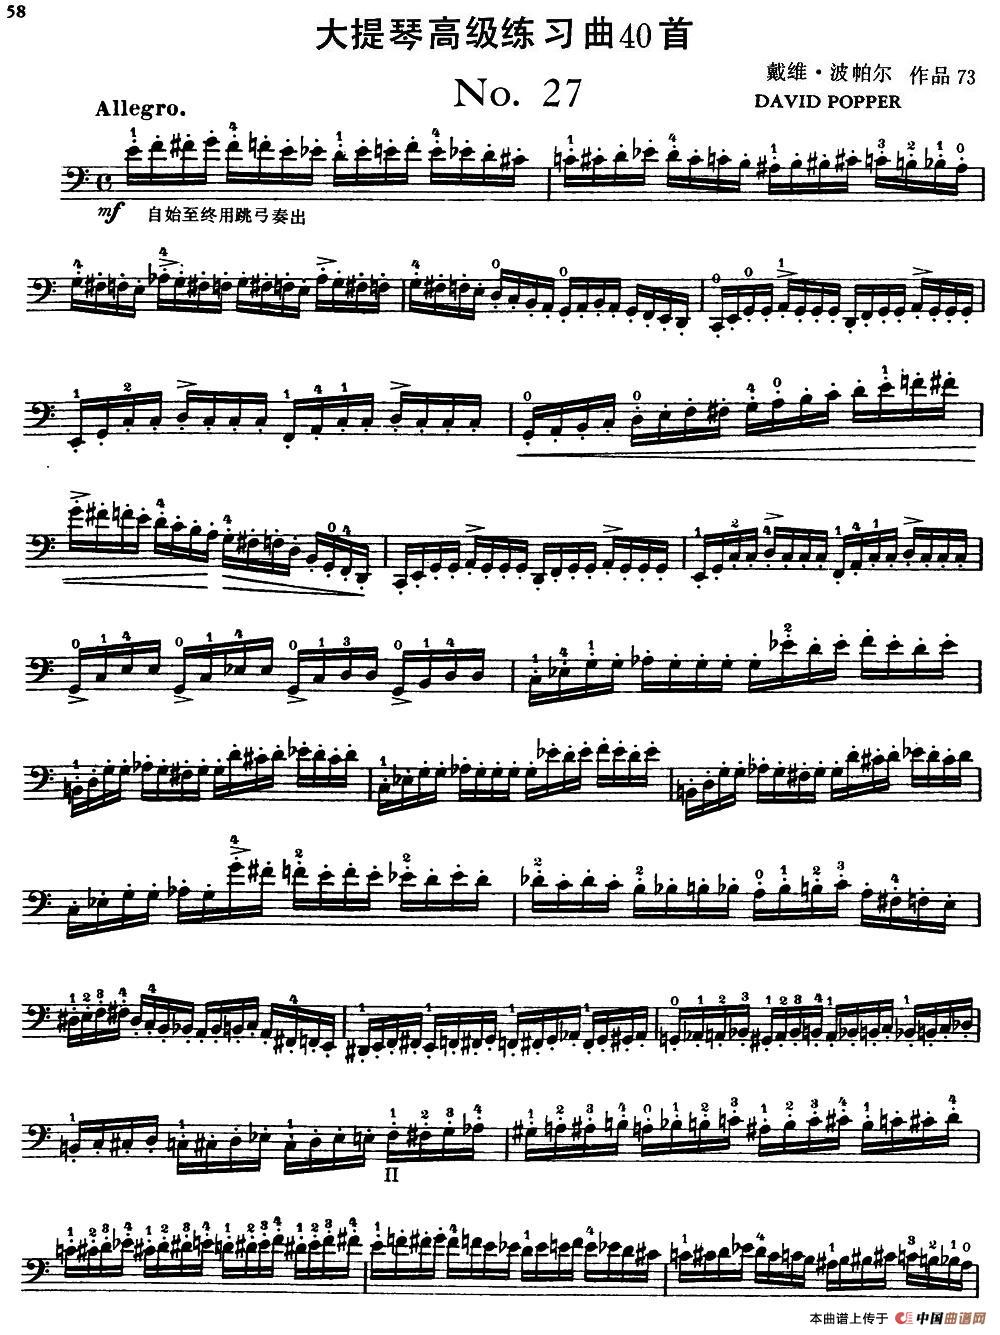 大提琴高级练习曲40首 No.27小提琴谱